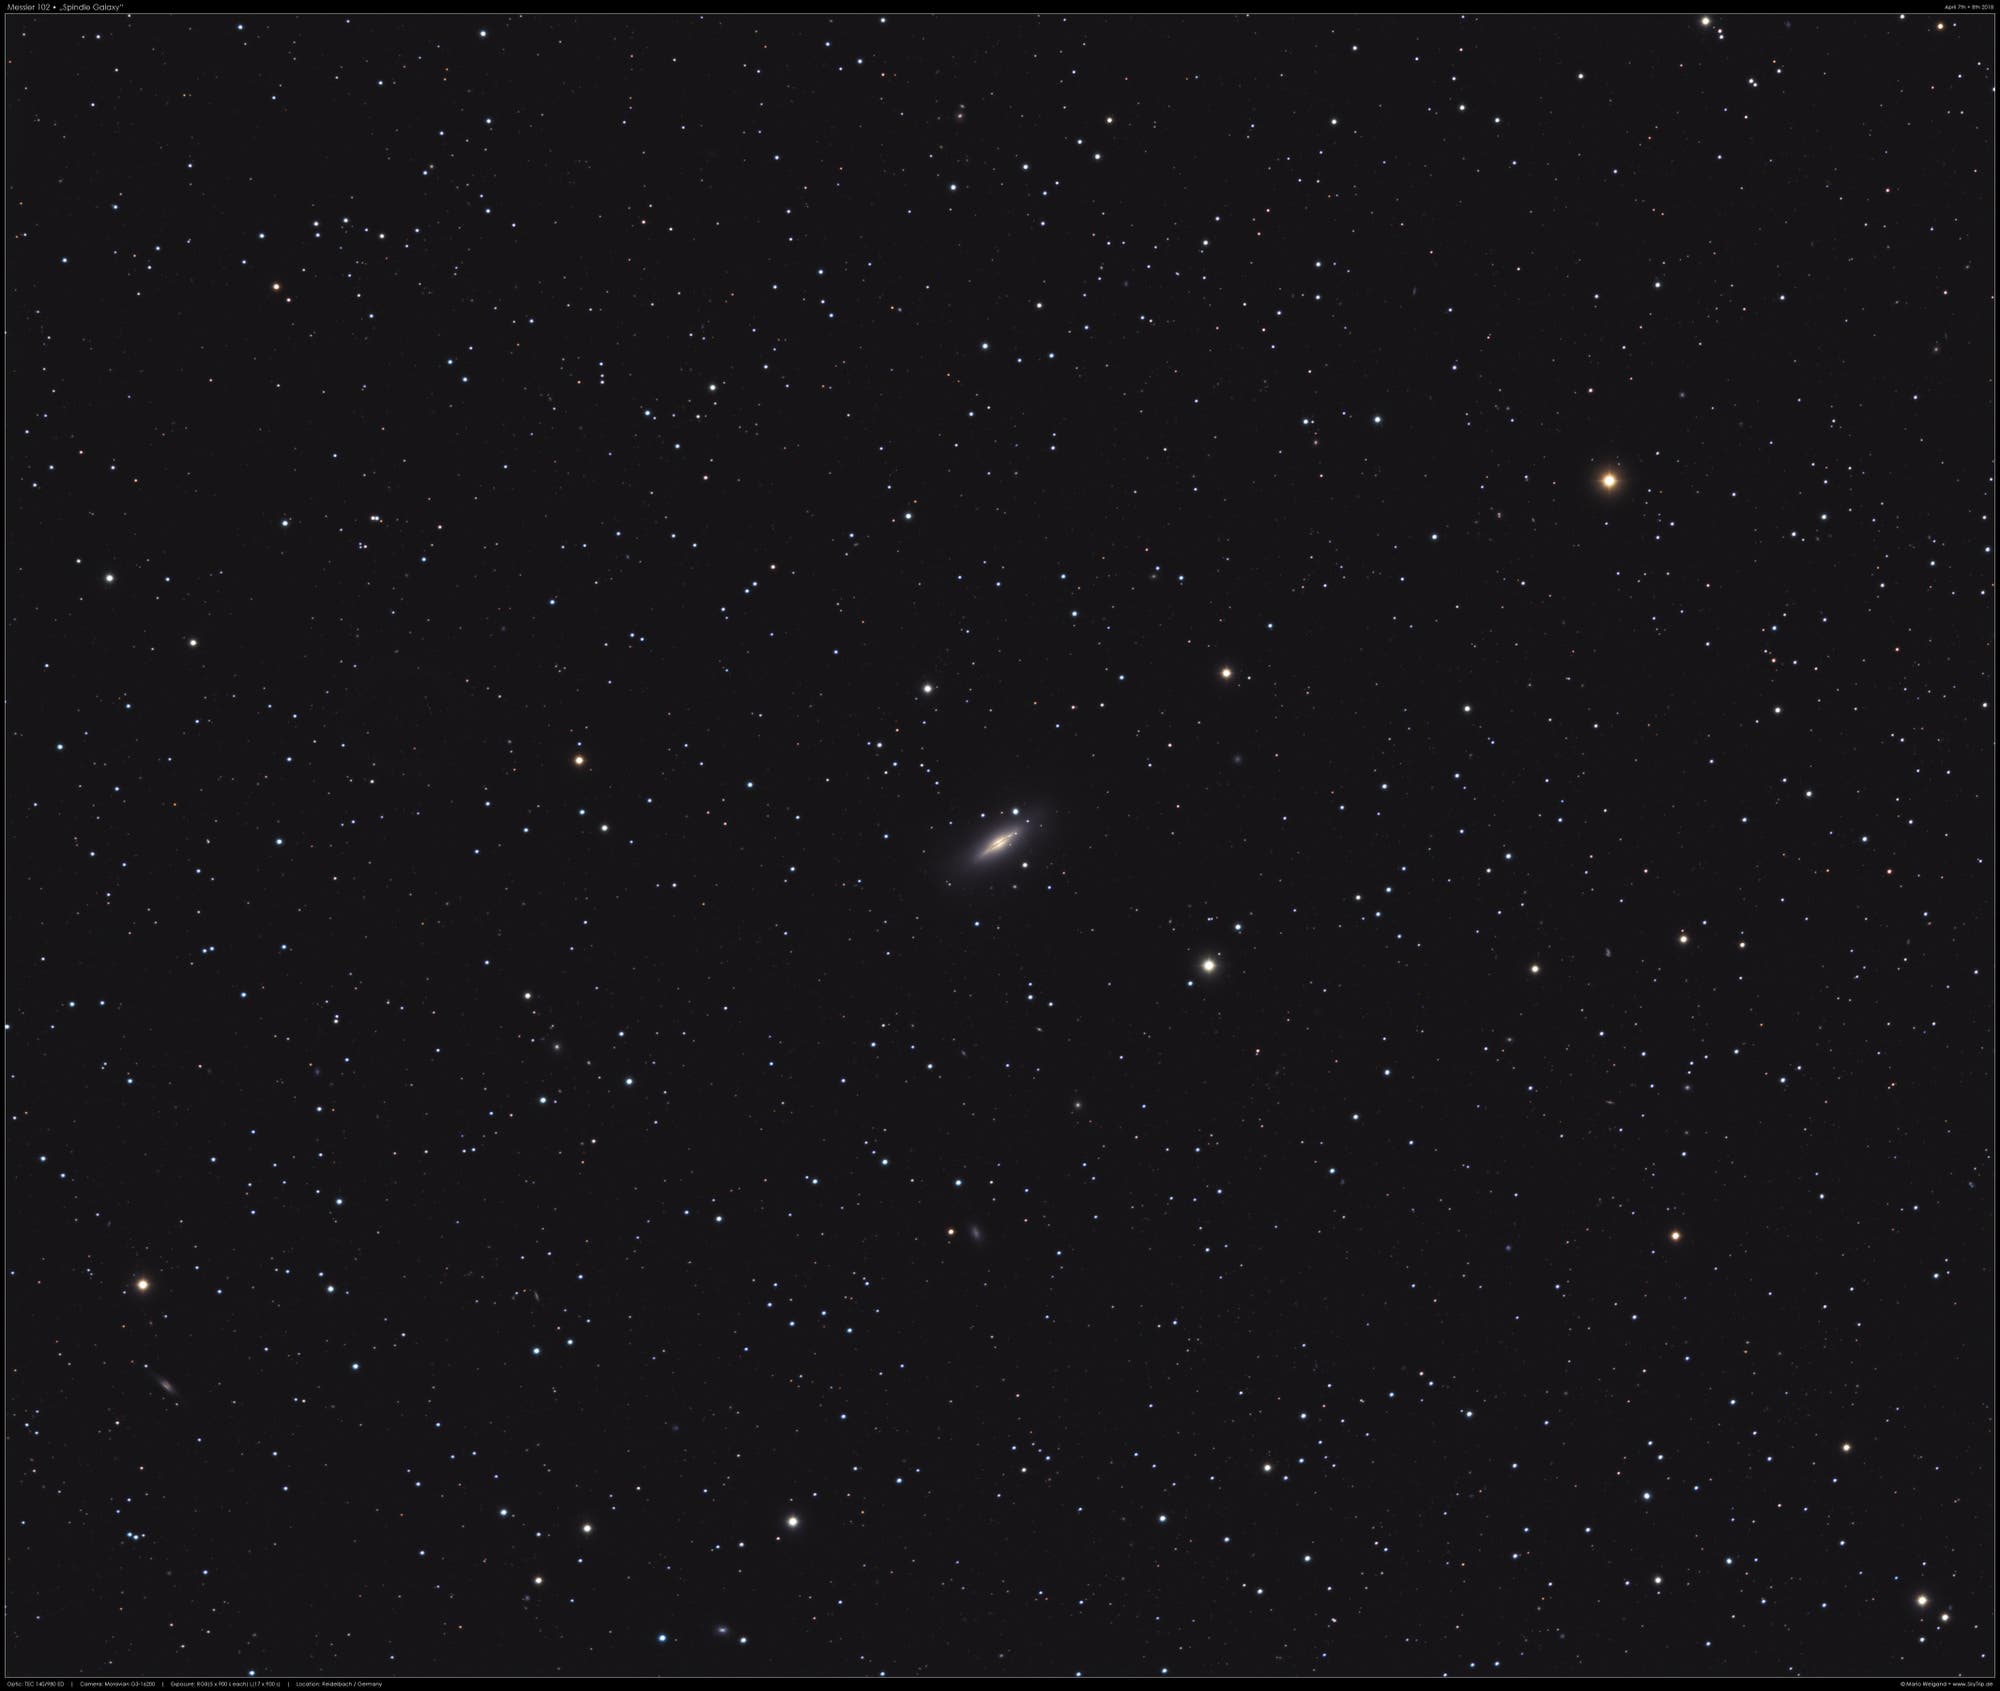 "Spindelgalaxie" Messier 102